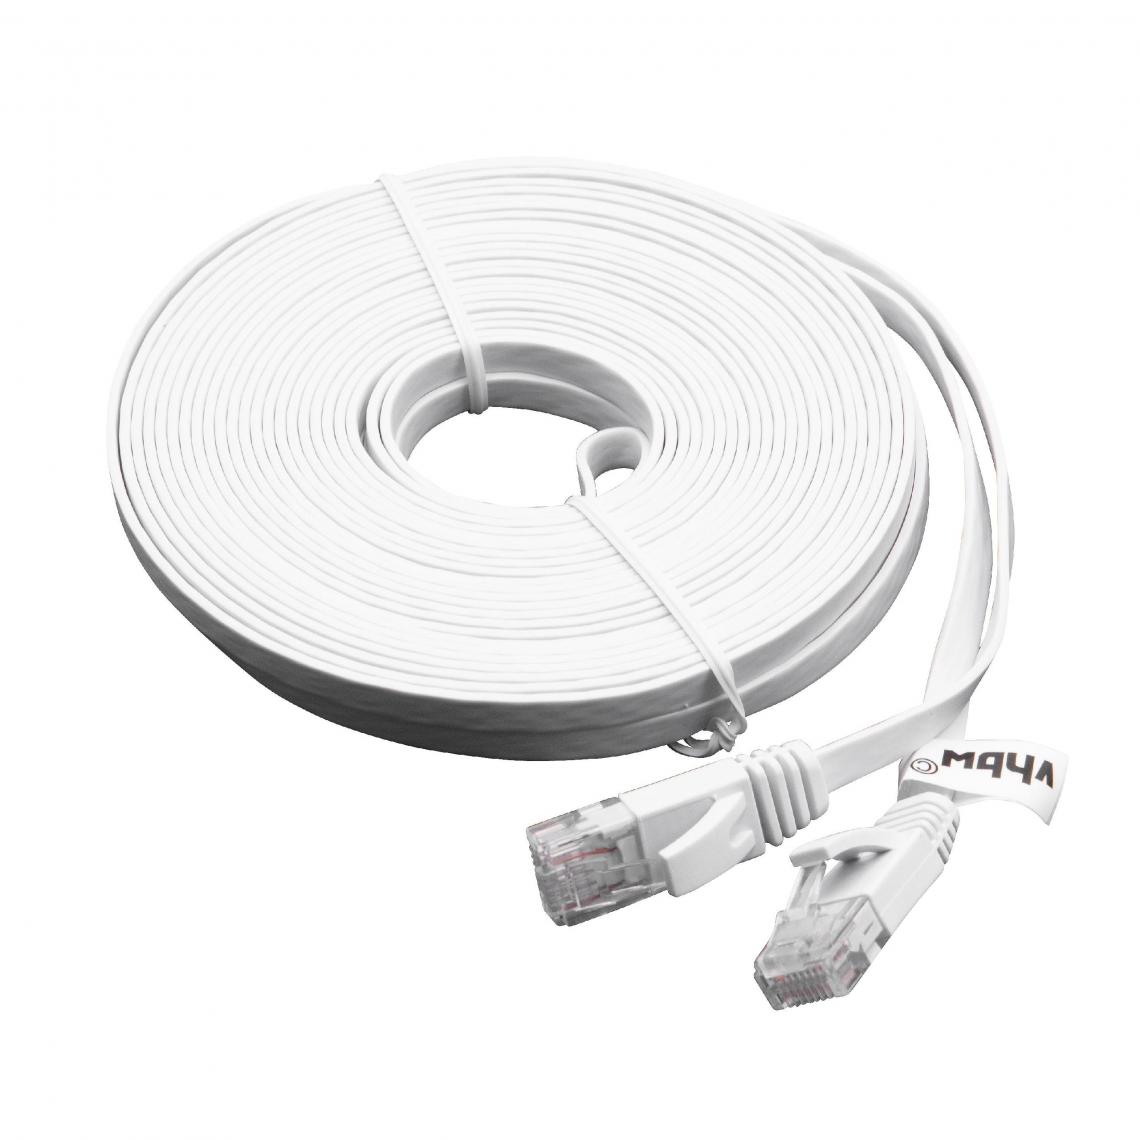 Vhbw - vhbw câble de réseau câble LAN Cat6 10m blanc câble plat - Accessoires alimentation